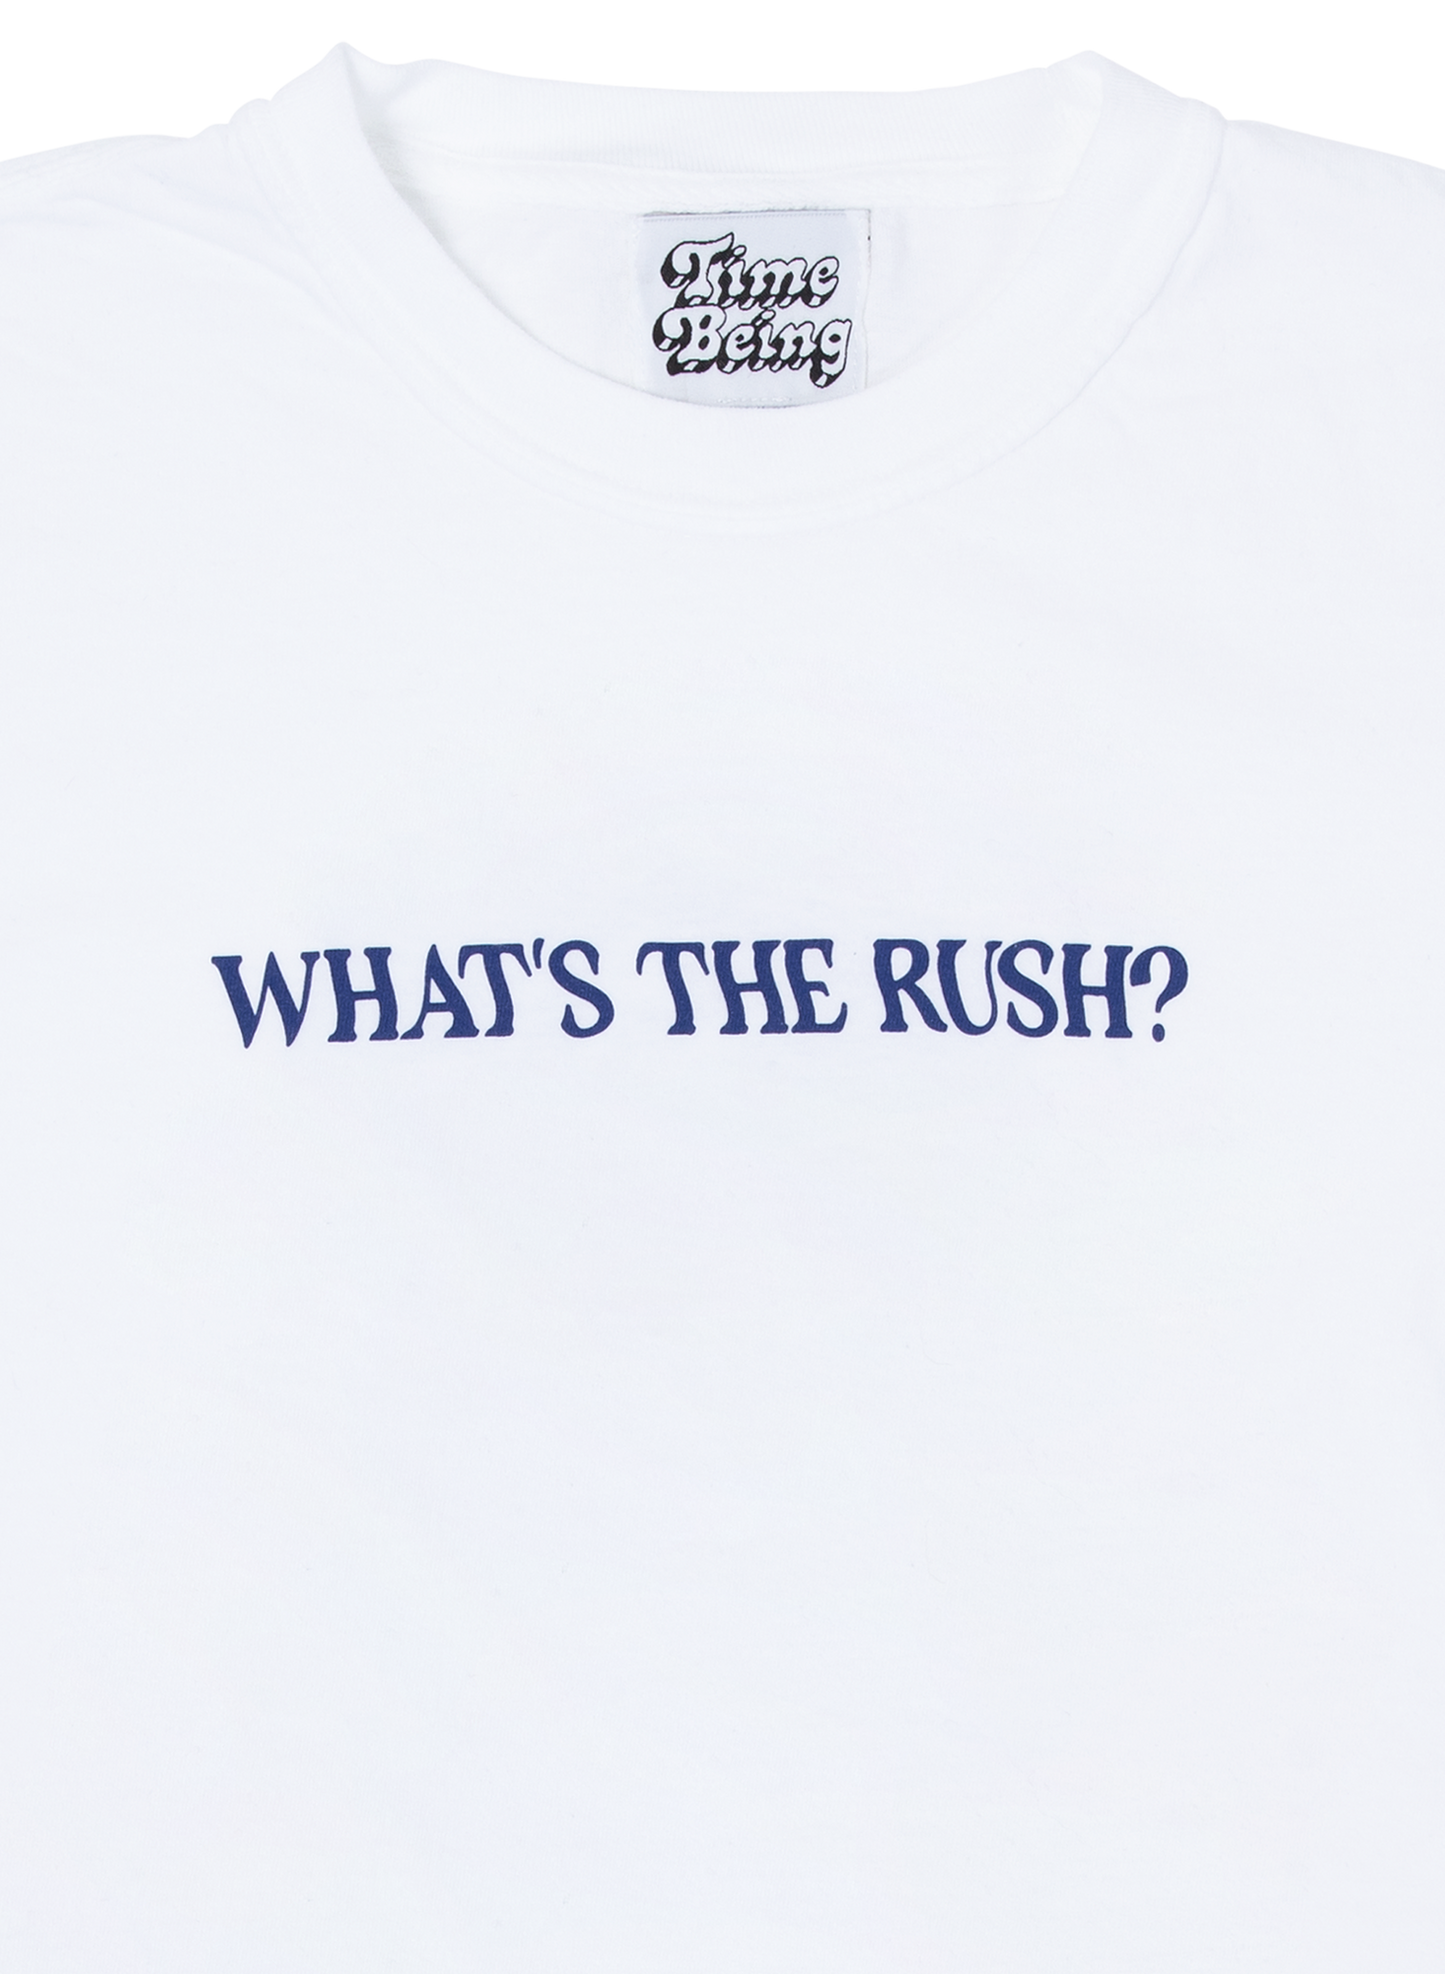 WHAT'S THE RUSH? T-SHIRT (WHITE)